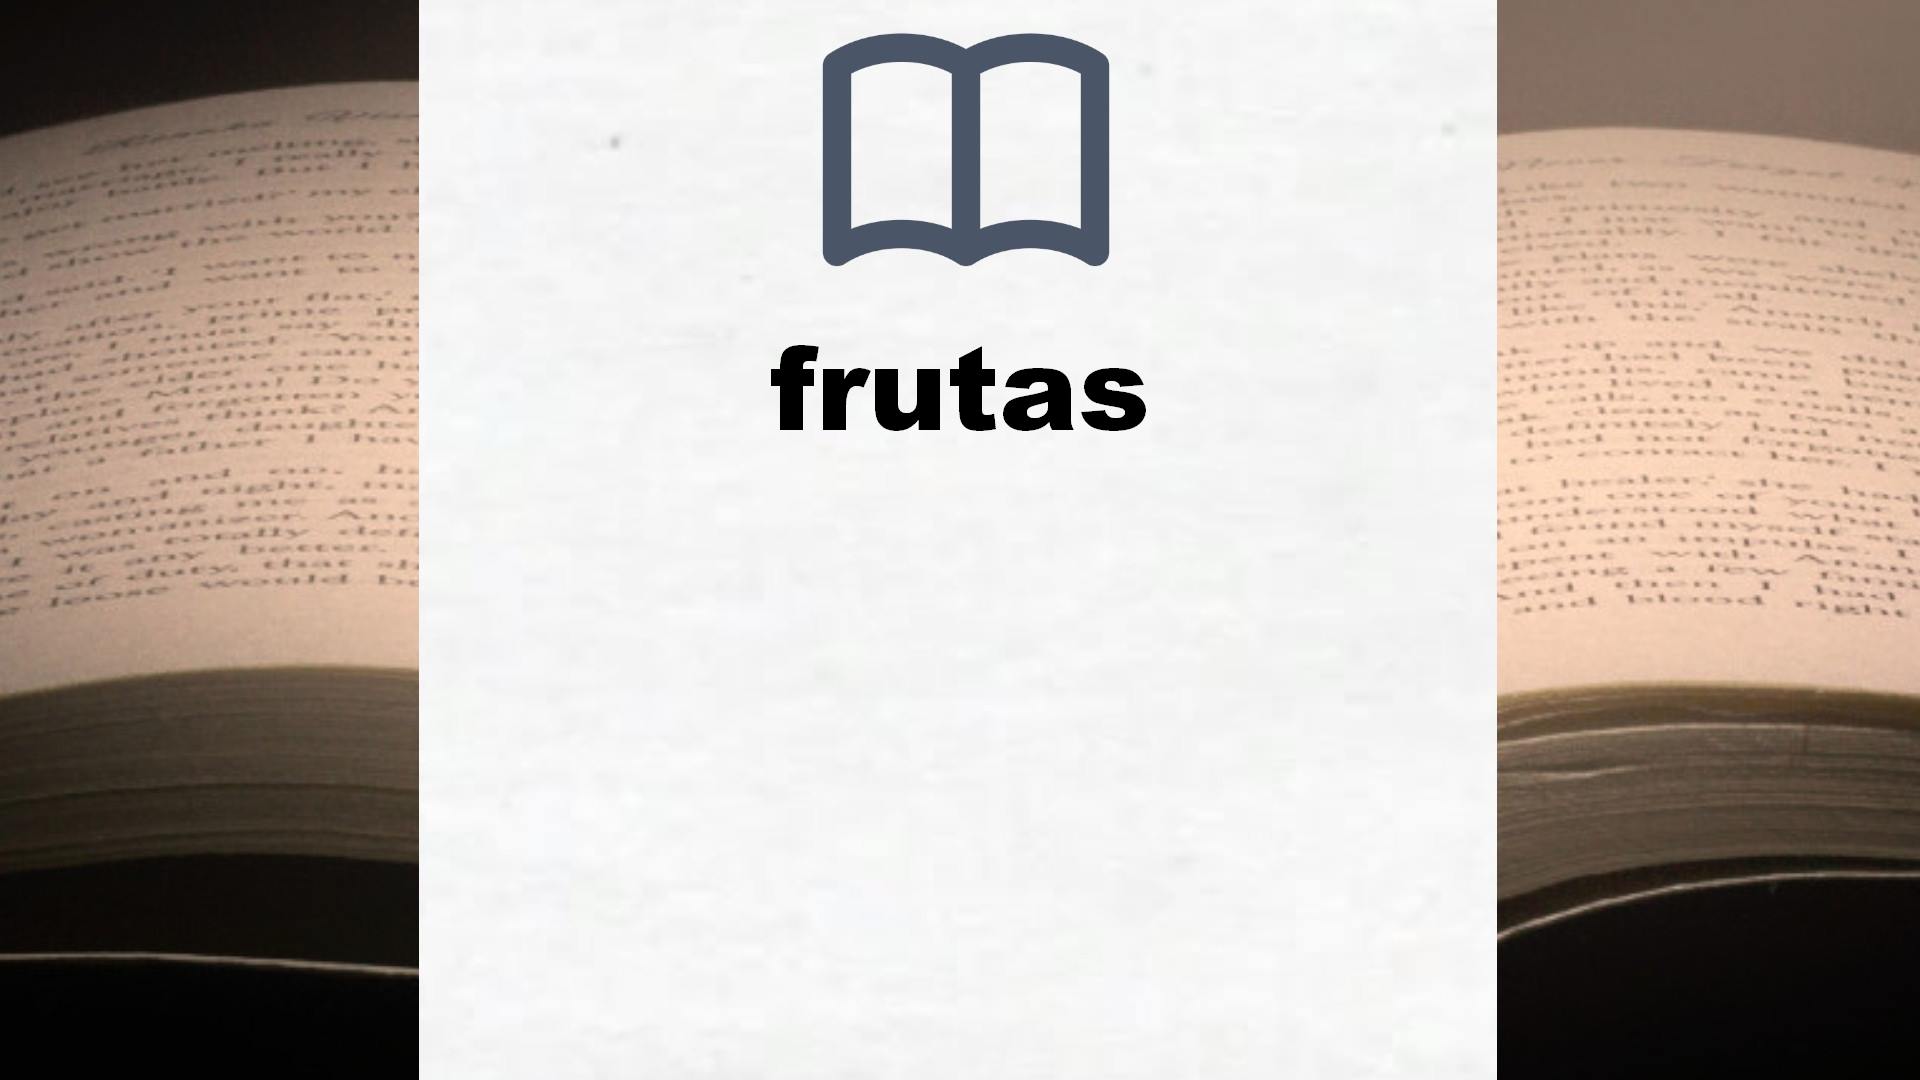 Libros sobre frutas